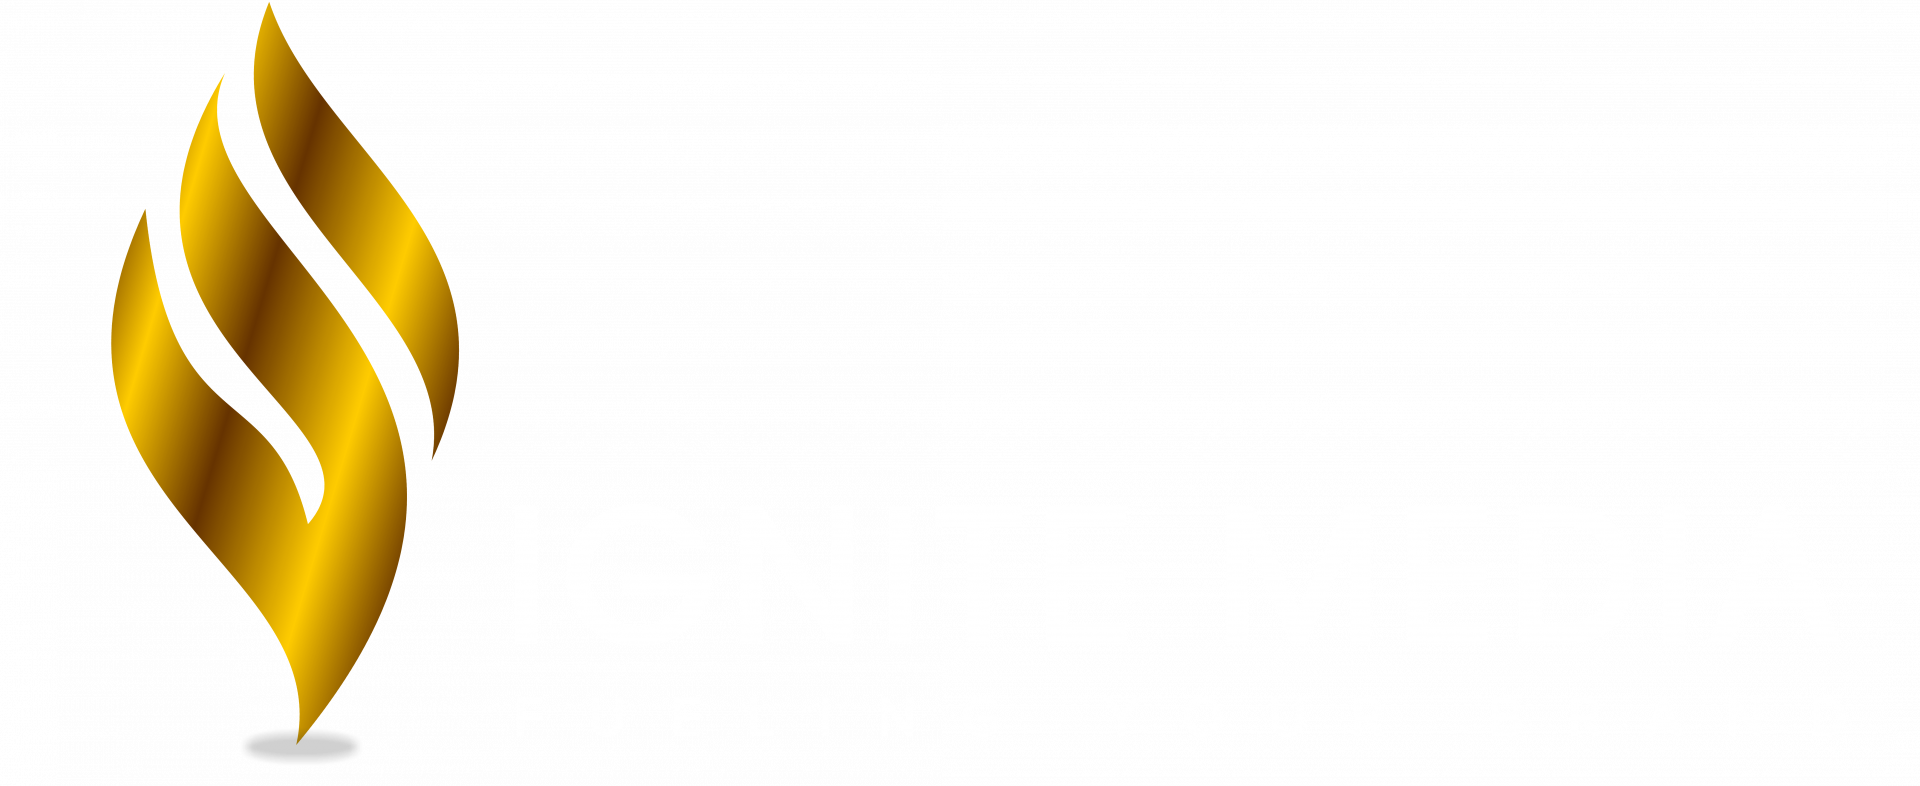 ignite media logo